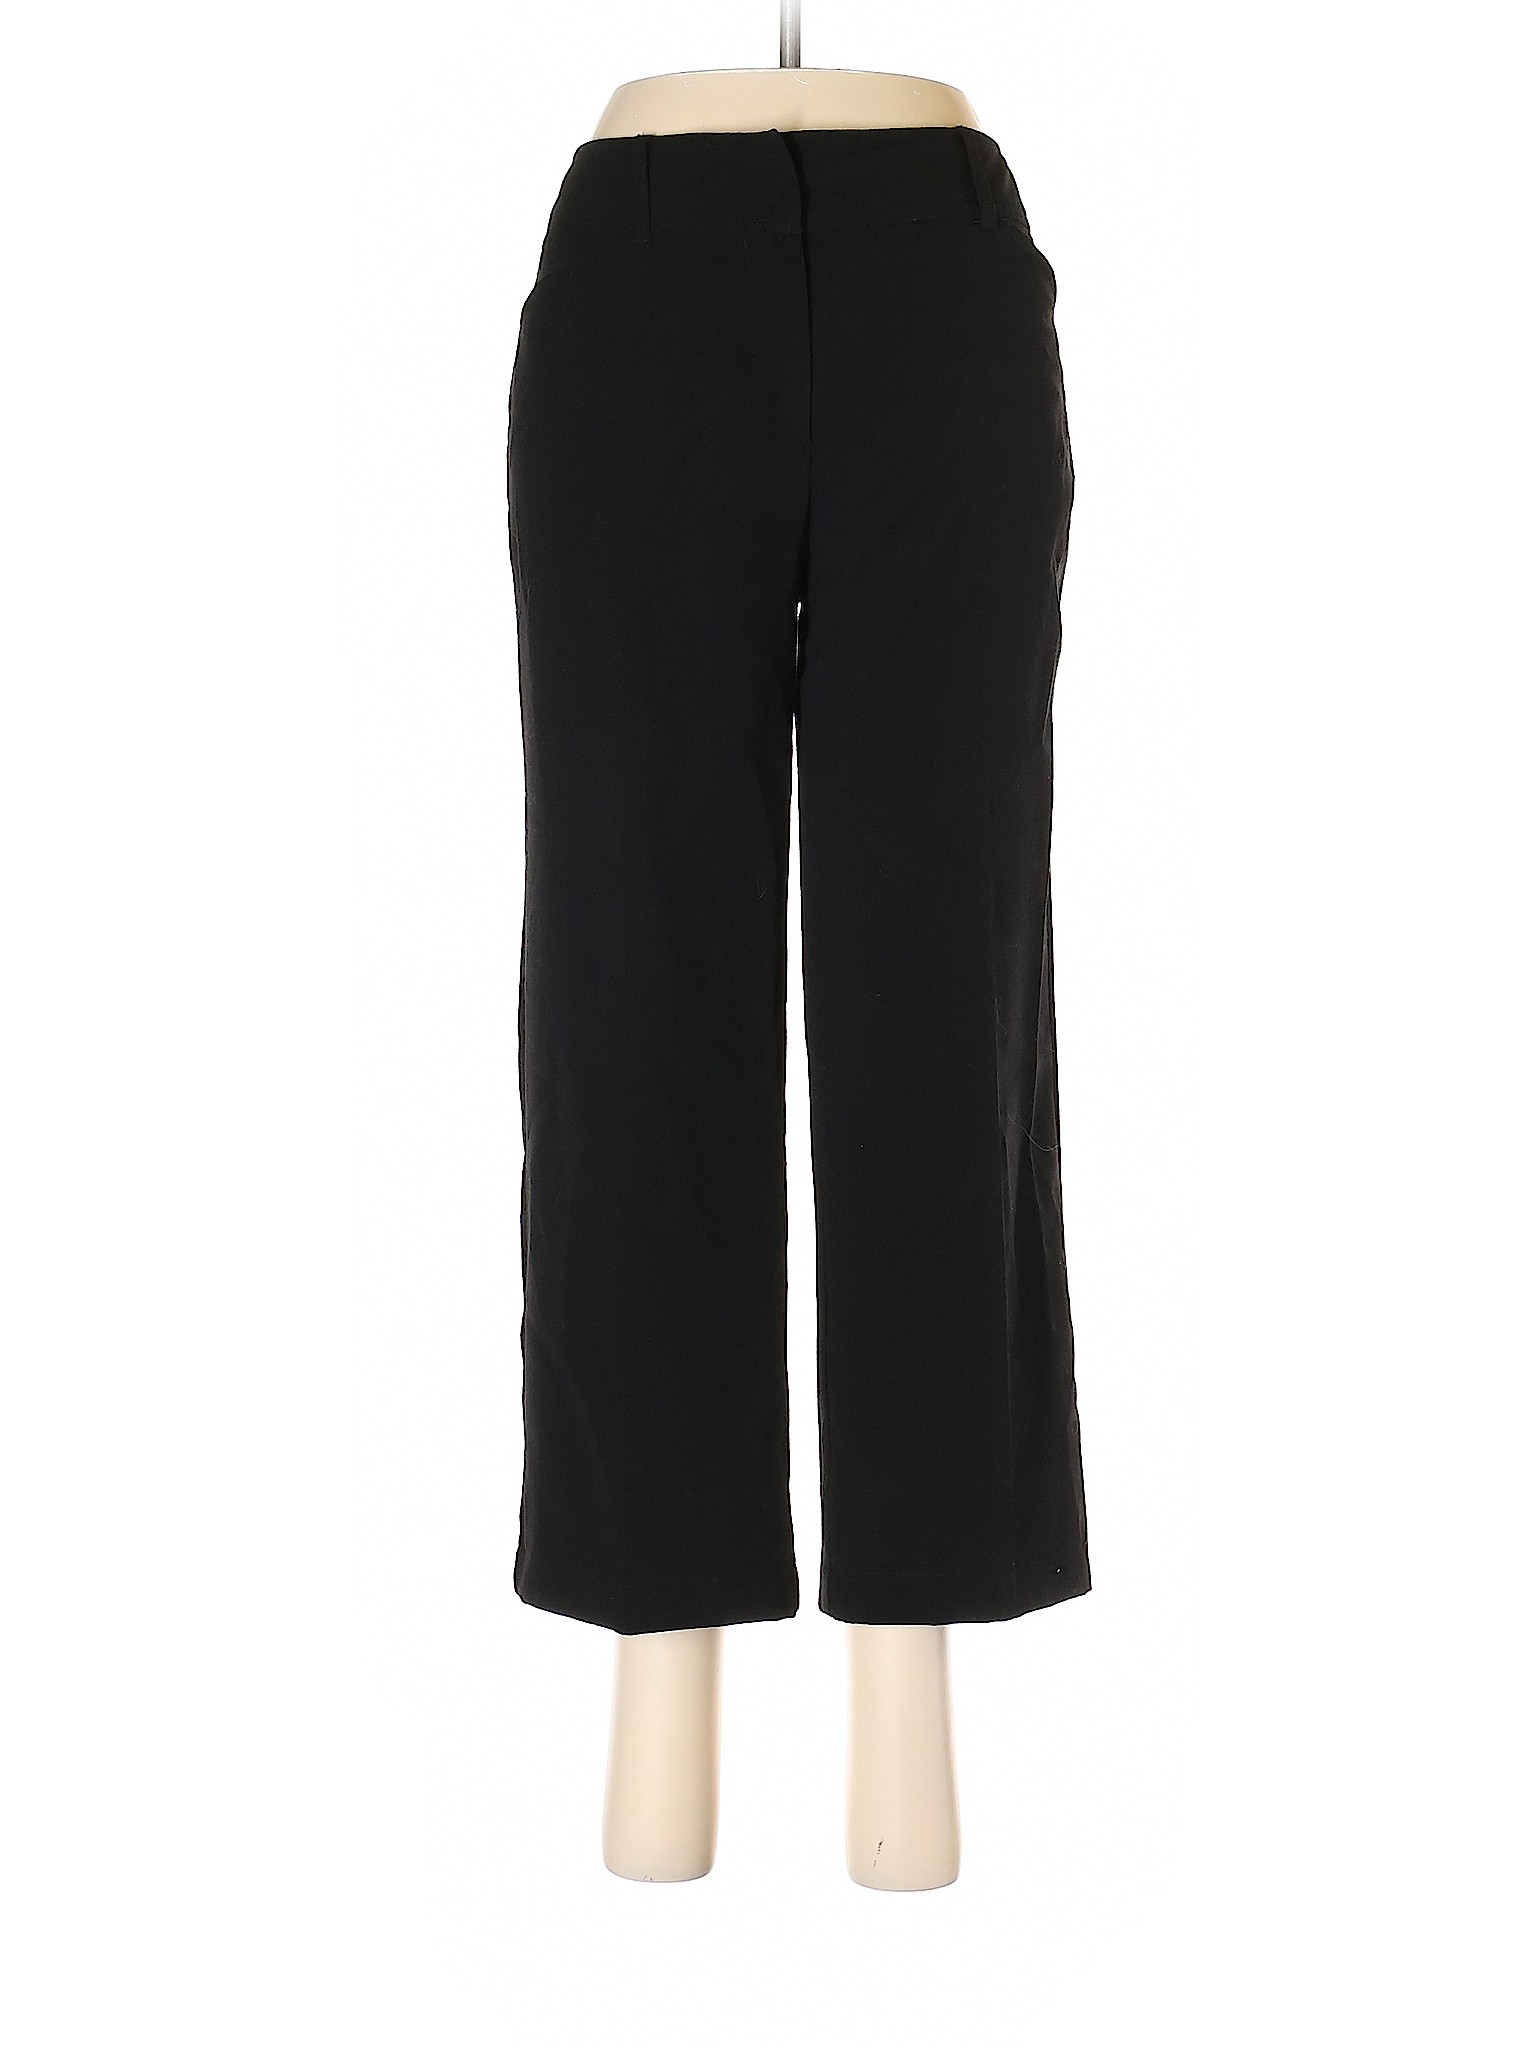 Chadwicks Women Black Dress Pants 4 | eBay